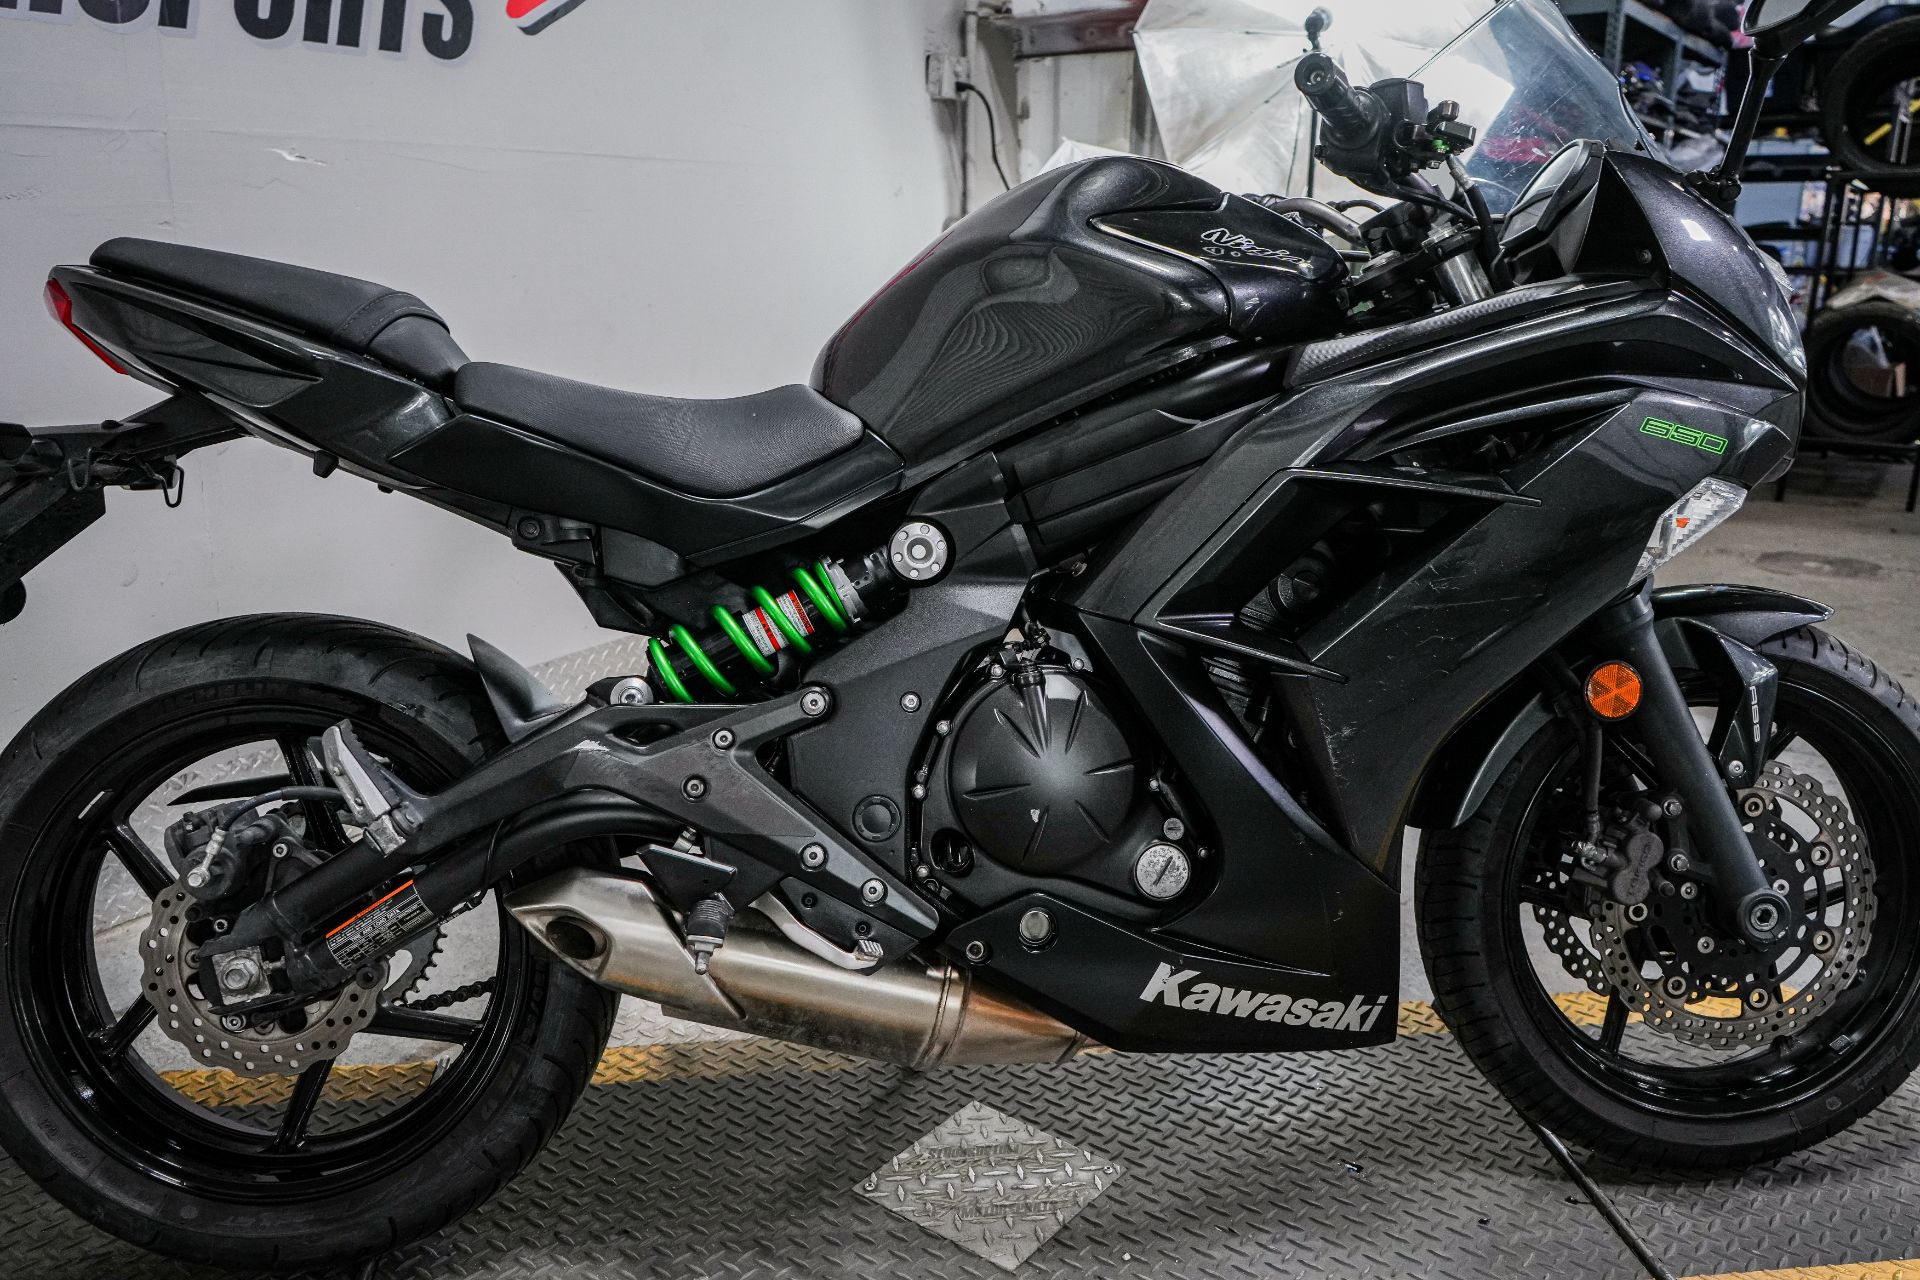 2016 Kawasaki Ninja 650 ABS in Sacramento, California - Photo 8